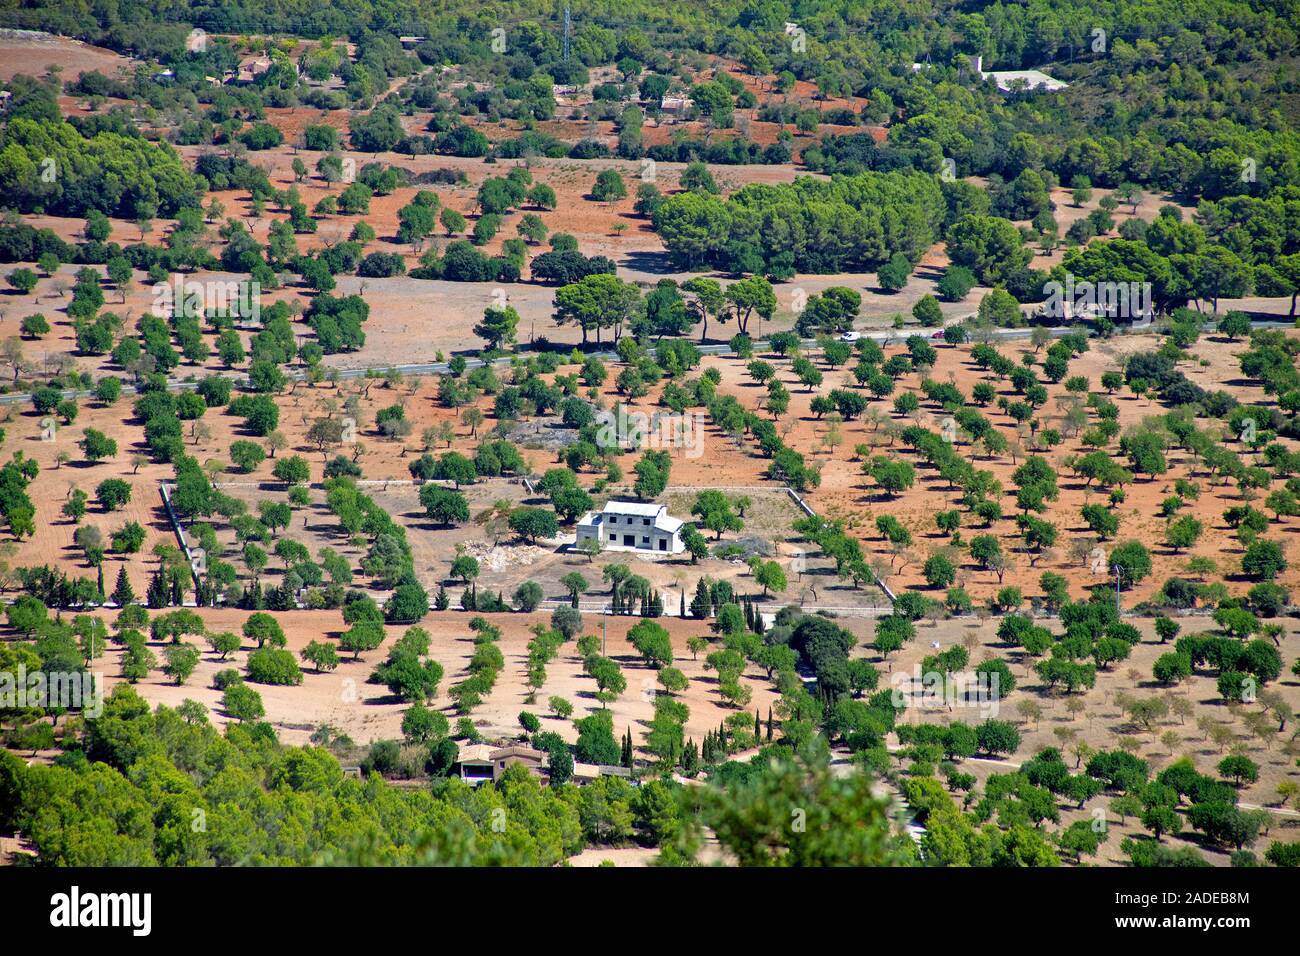 Vista desde el monasterio Santuario de Sant Salvador en una explotación agrícola, Felanitx, Mallorca, Islas Baleares, España Foto de stock